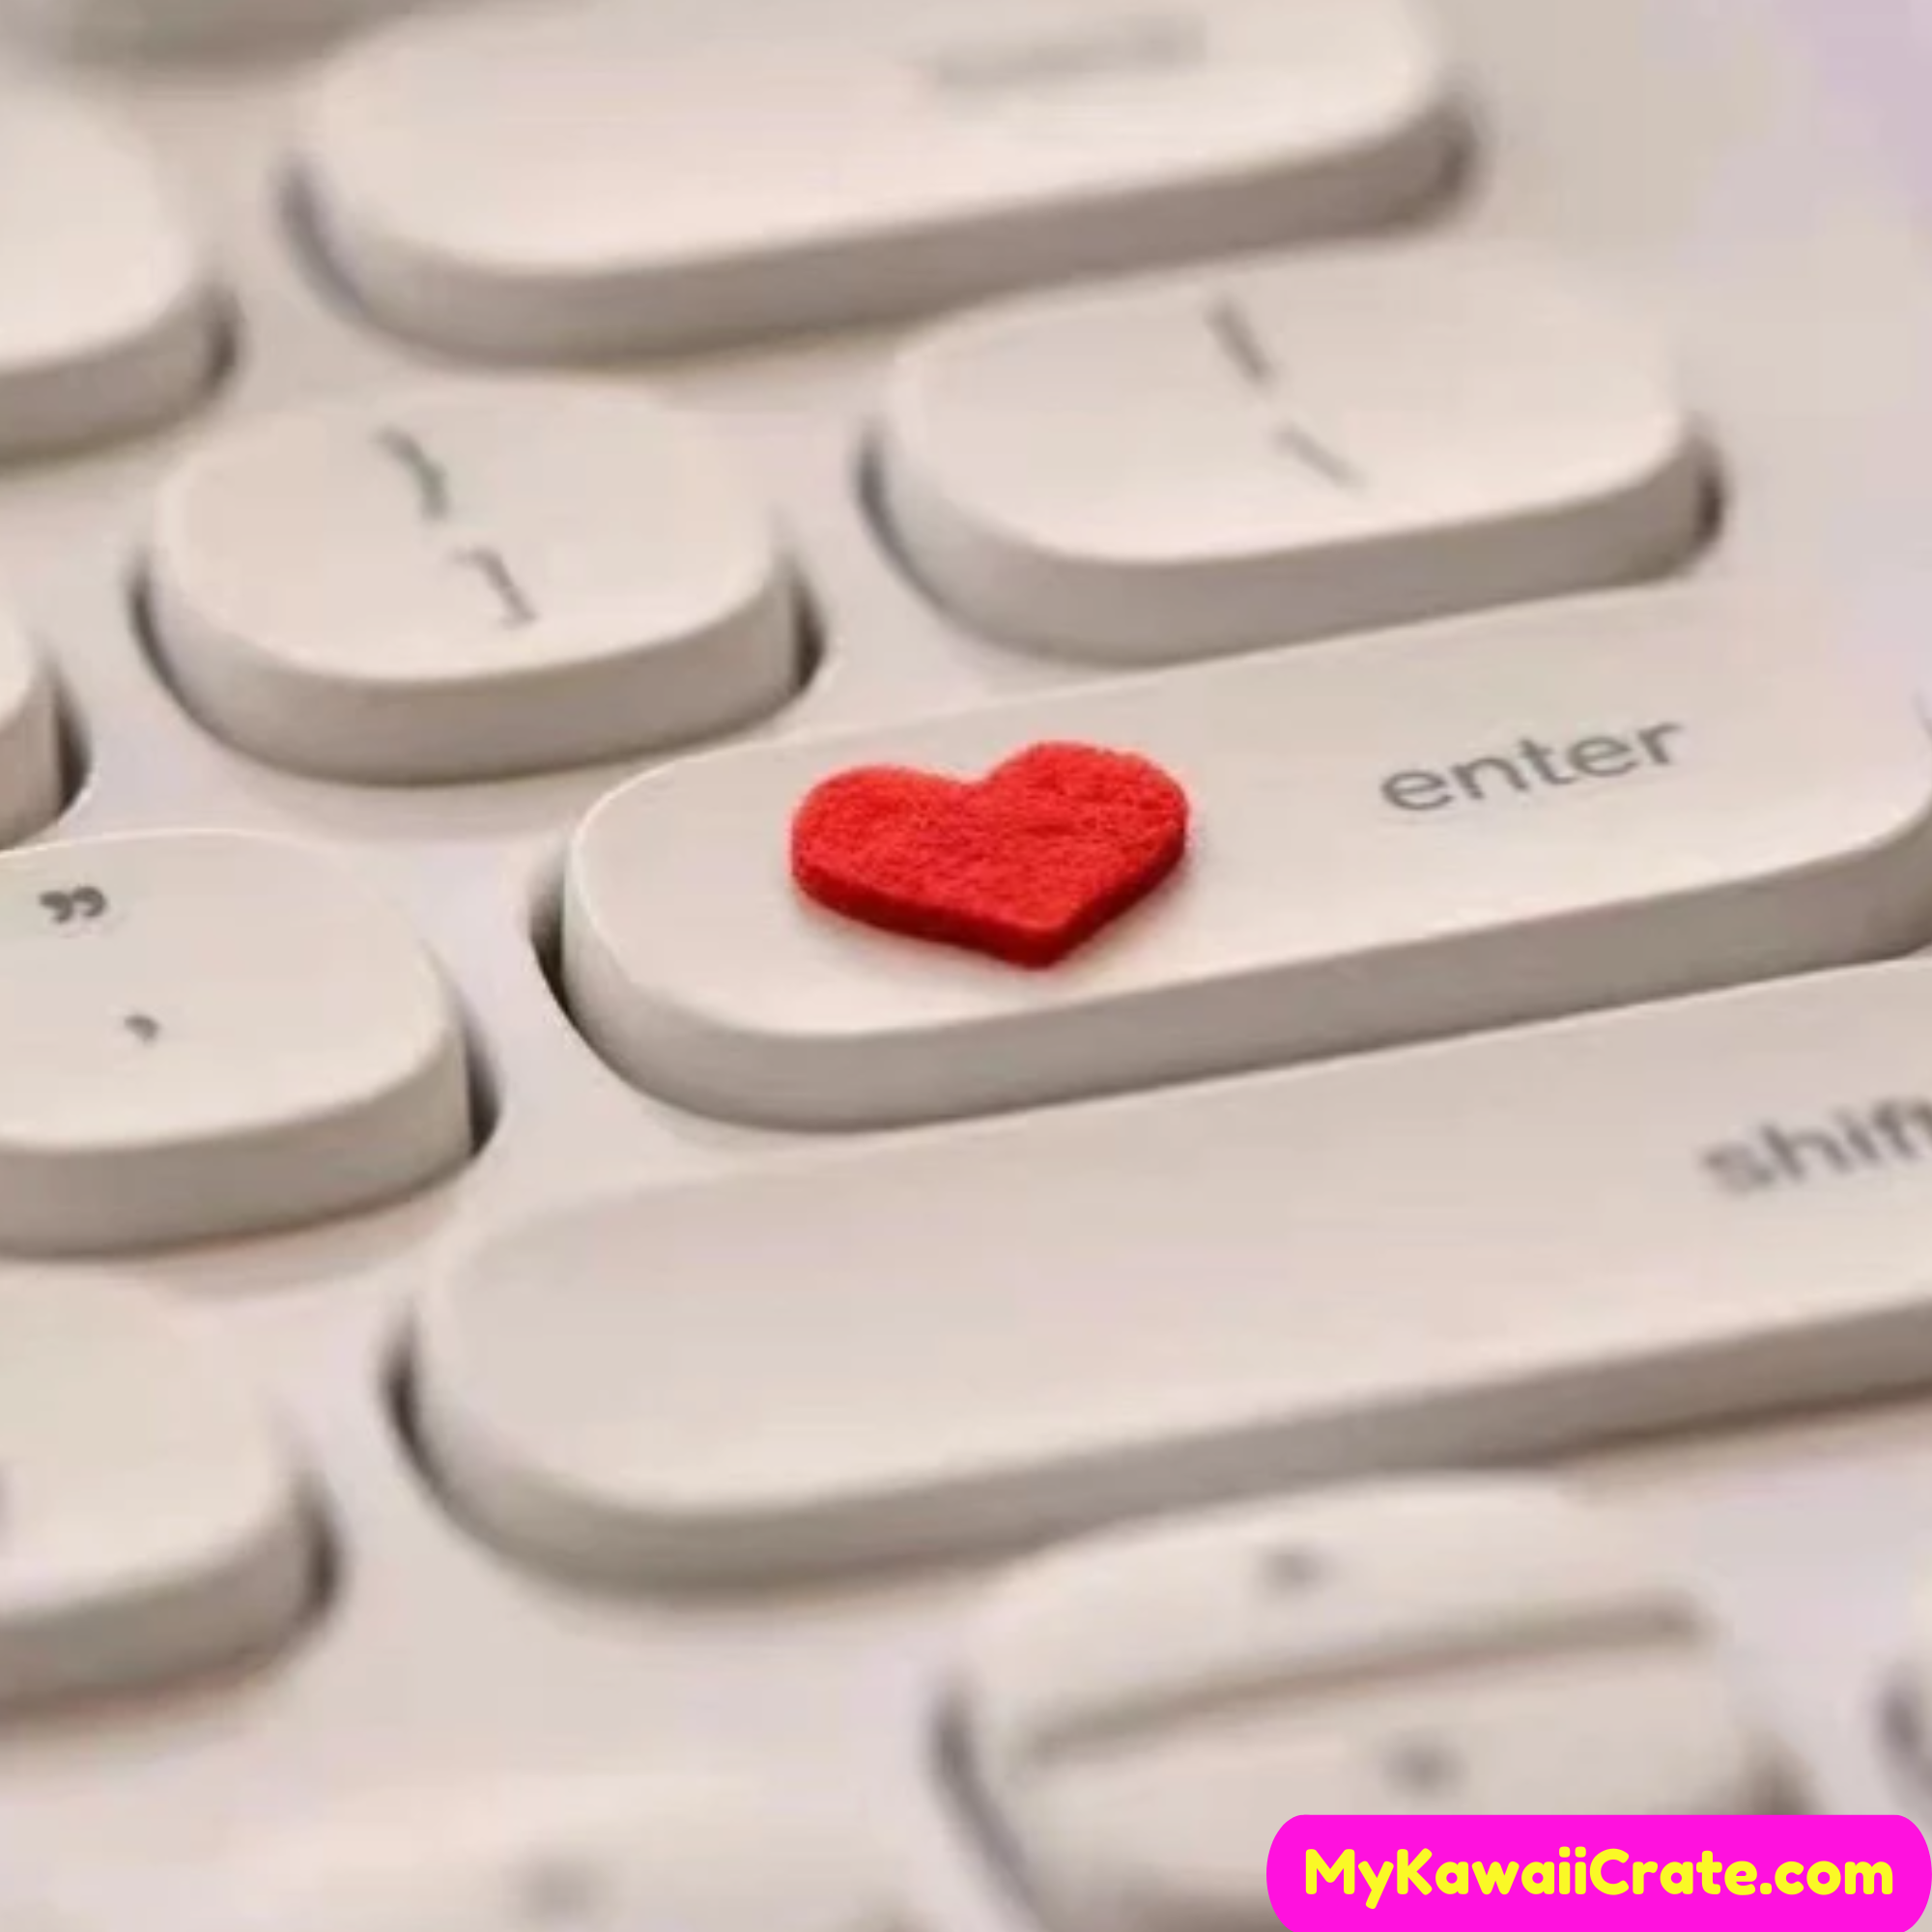 Cute Red Heart 3D Felt Stickers 2 Sheets Set – MyKawaiiCrate